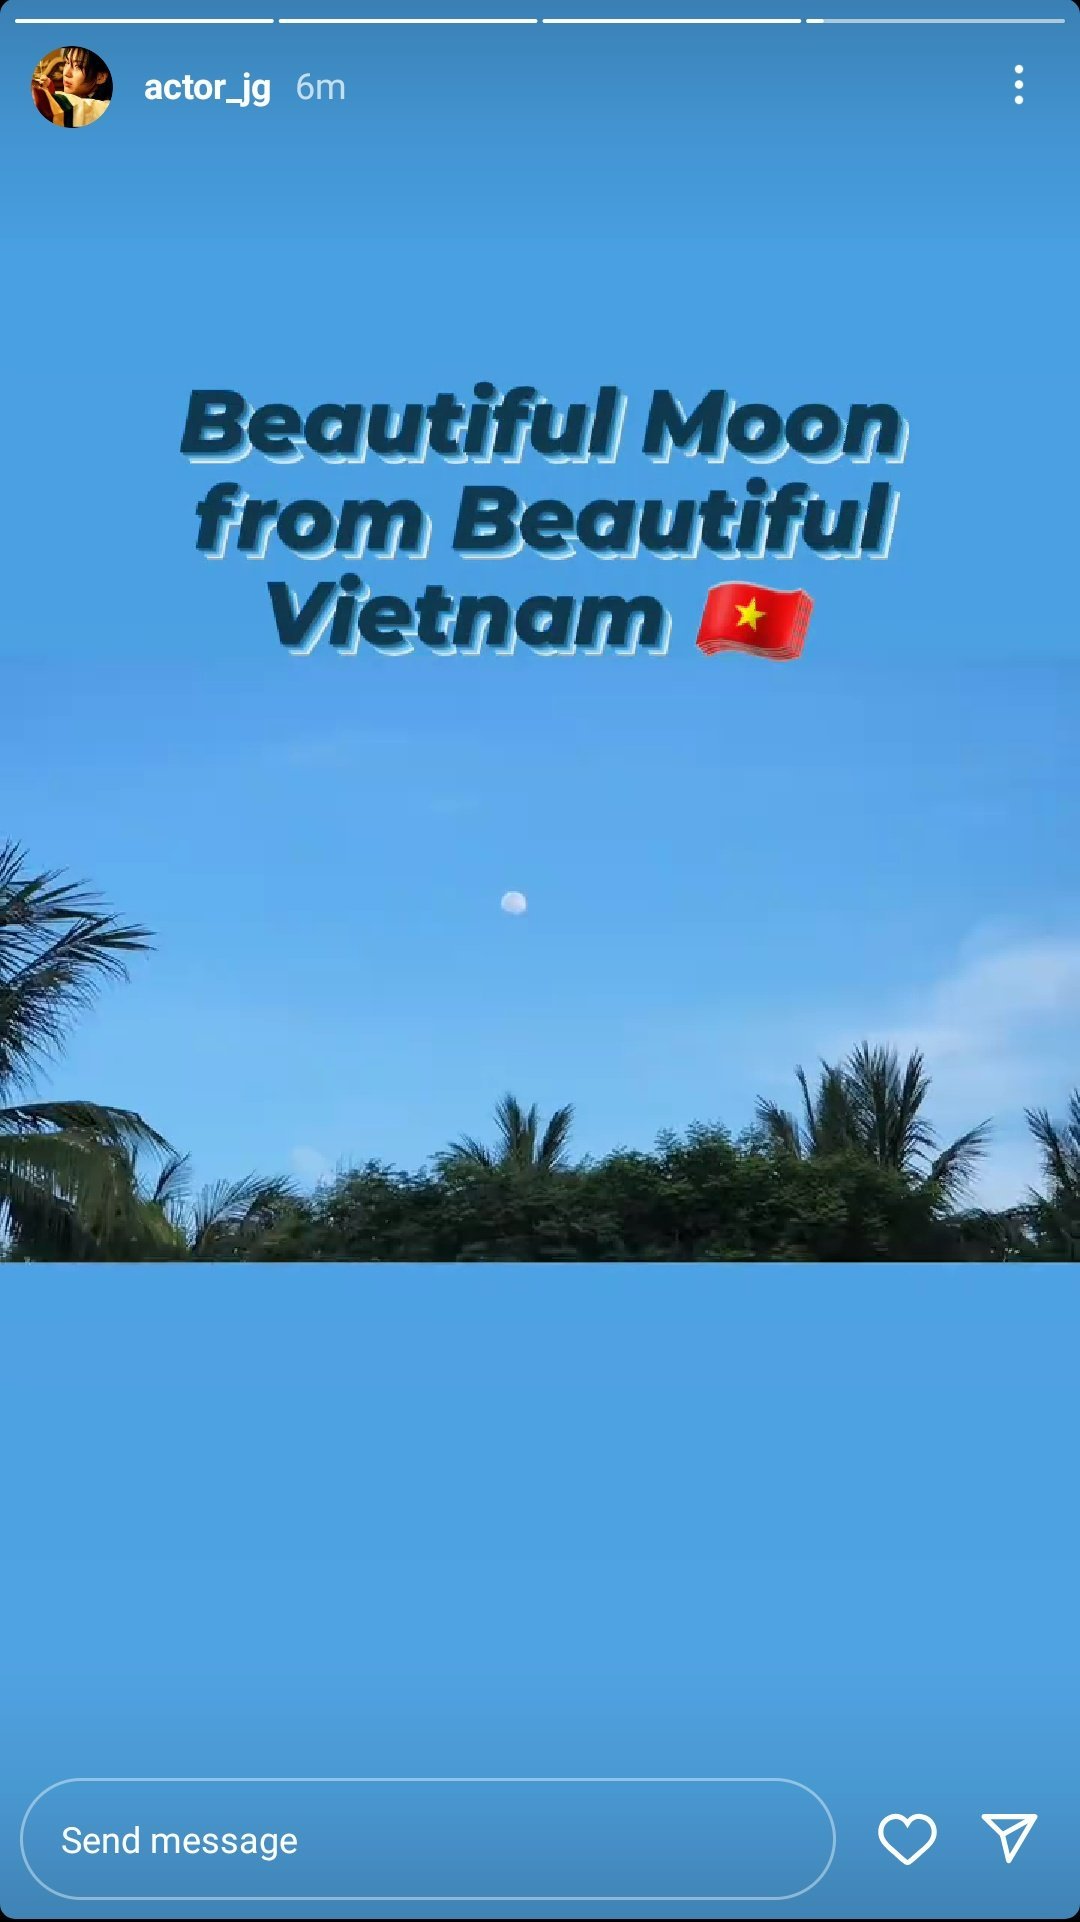 Nam diễn viên dành rất nhiều lời khen có cánh về cảnh đẹp tại Việt Nam.